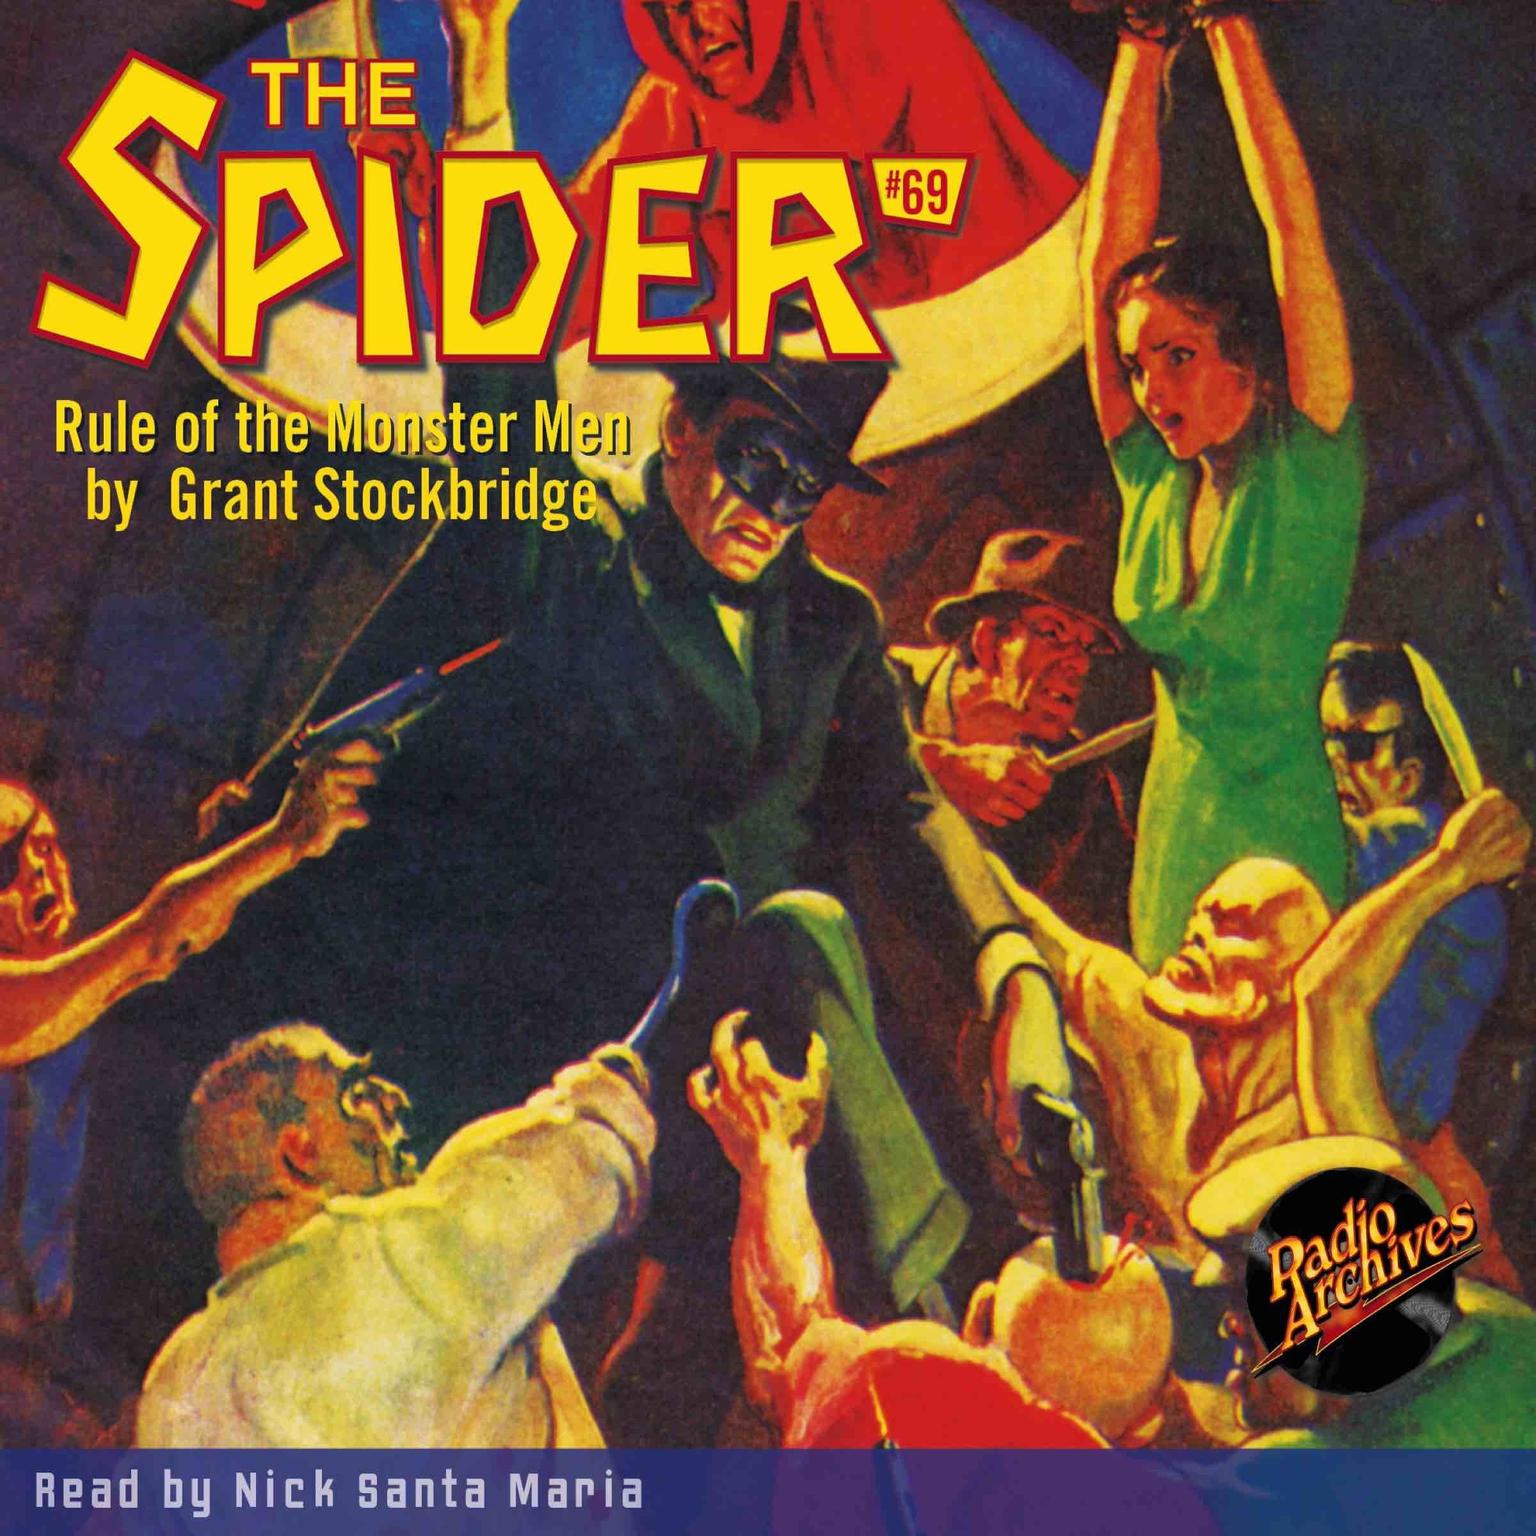 Spider #69, The: Rule of the Monster Men Audiobook, by Grant Stockbridge